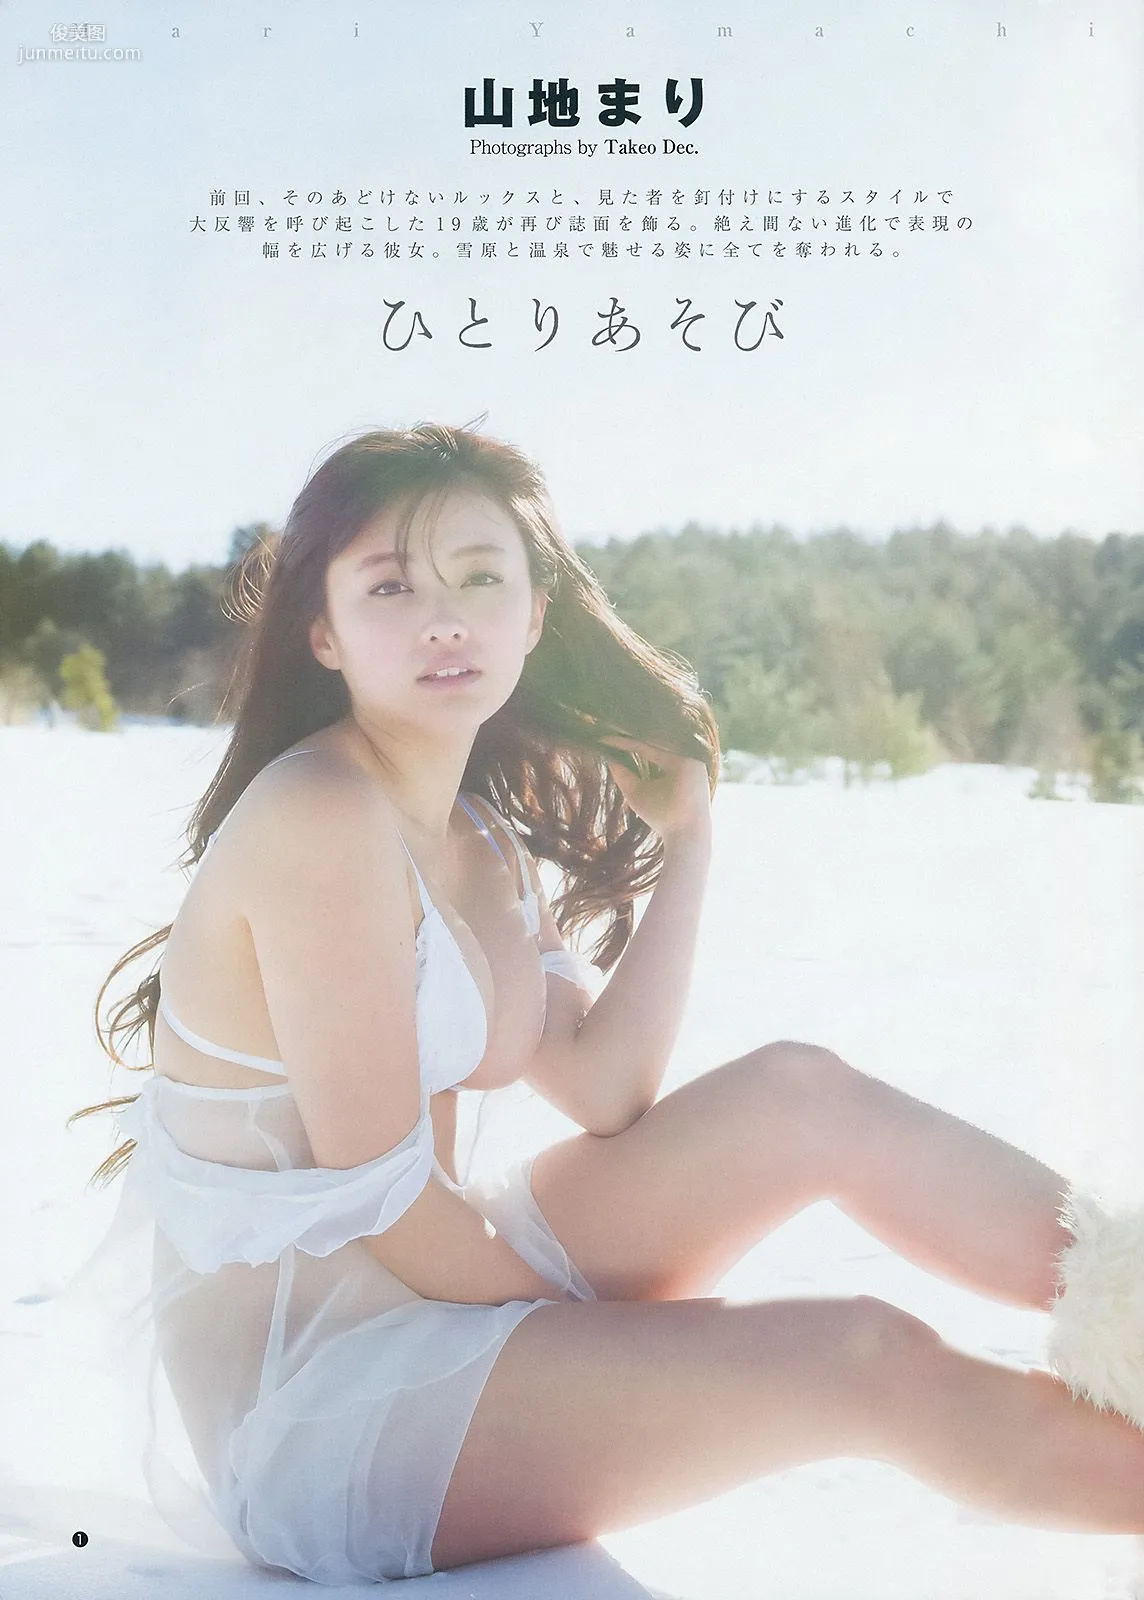 大島優子 池田ショコラ 山地まり [Weekly Young Jump] 2014年No.11 写真杂志13